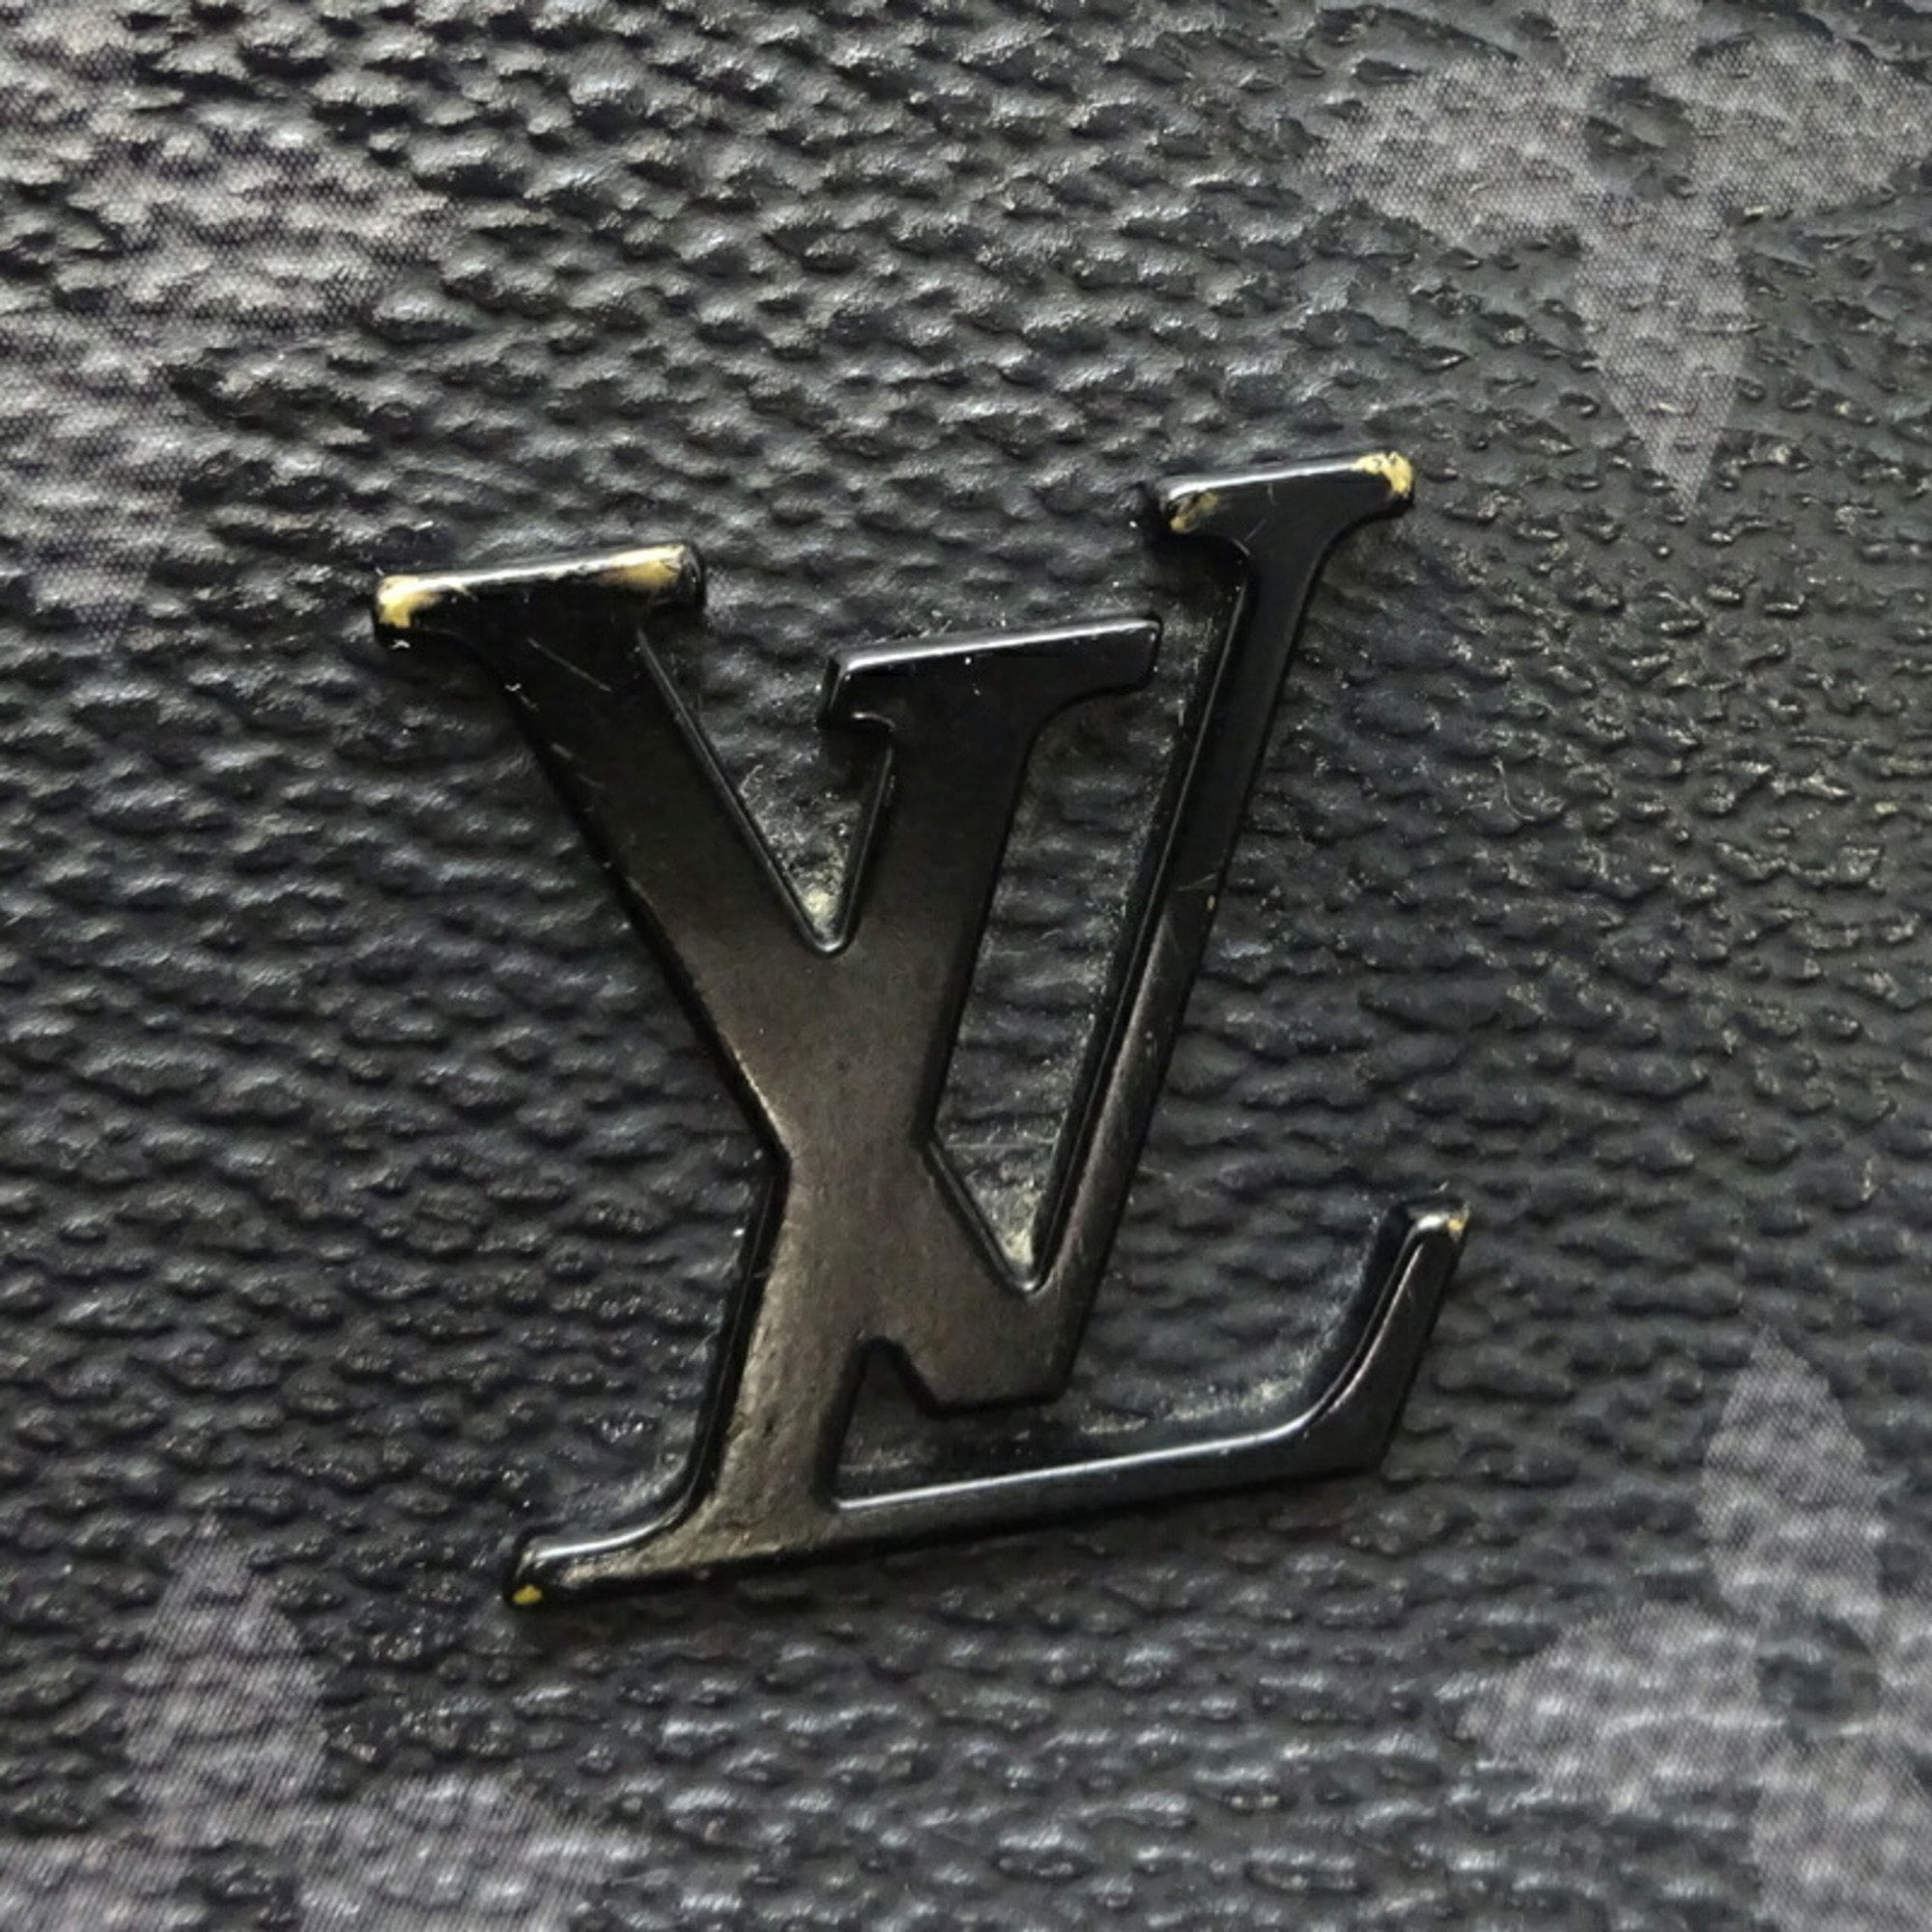 Louis Vuitton Odéon PM Black Monogram